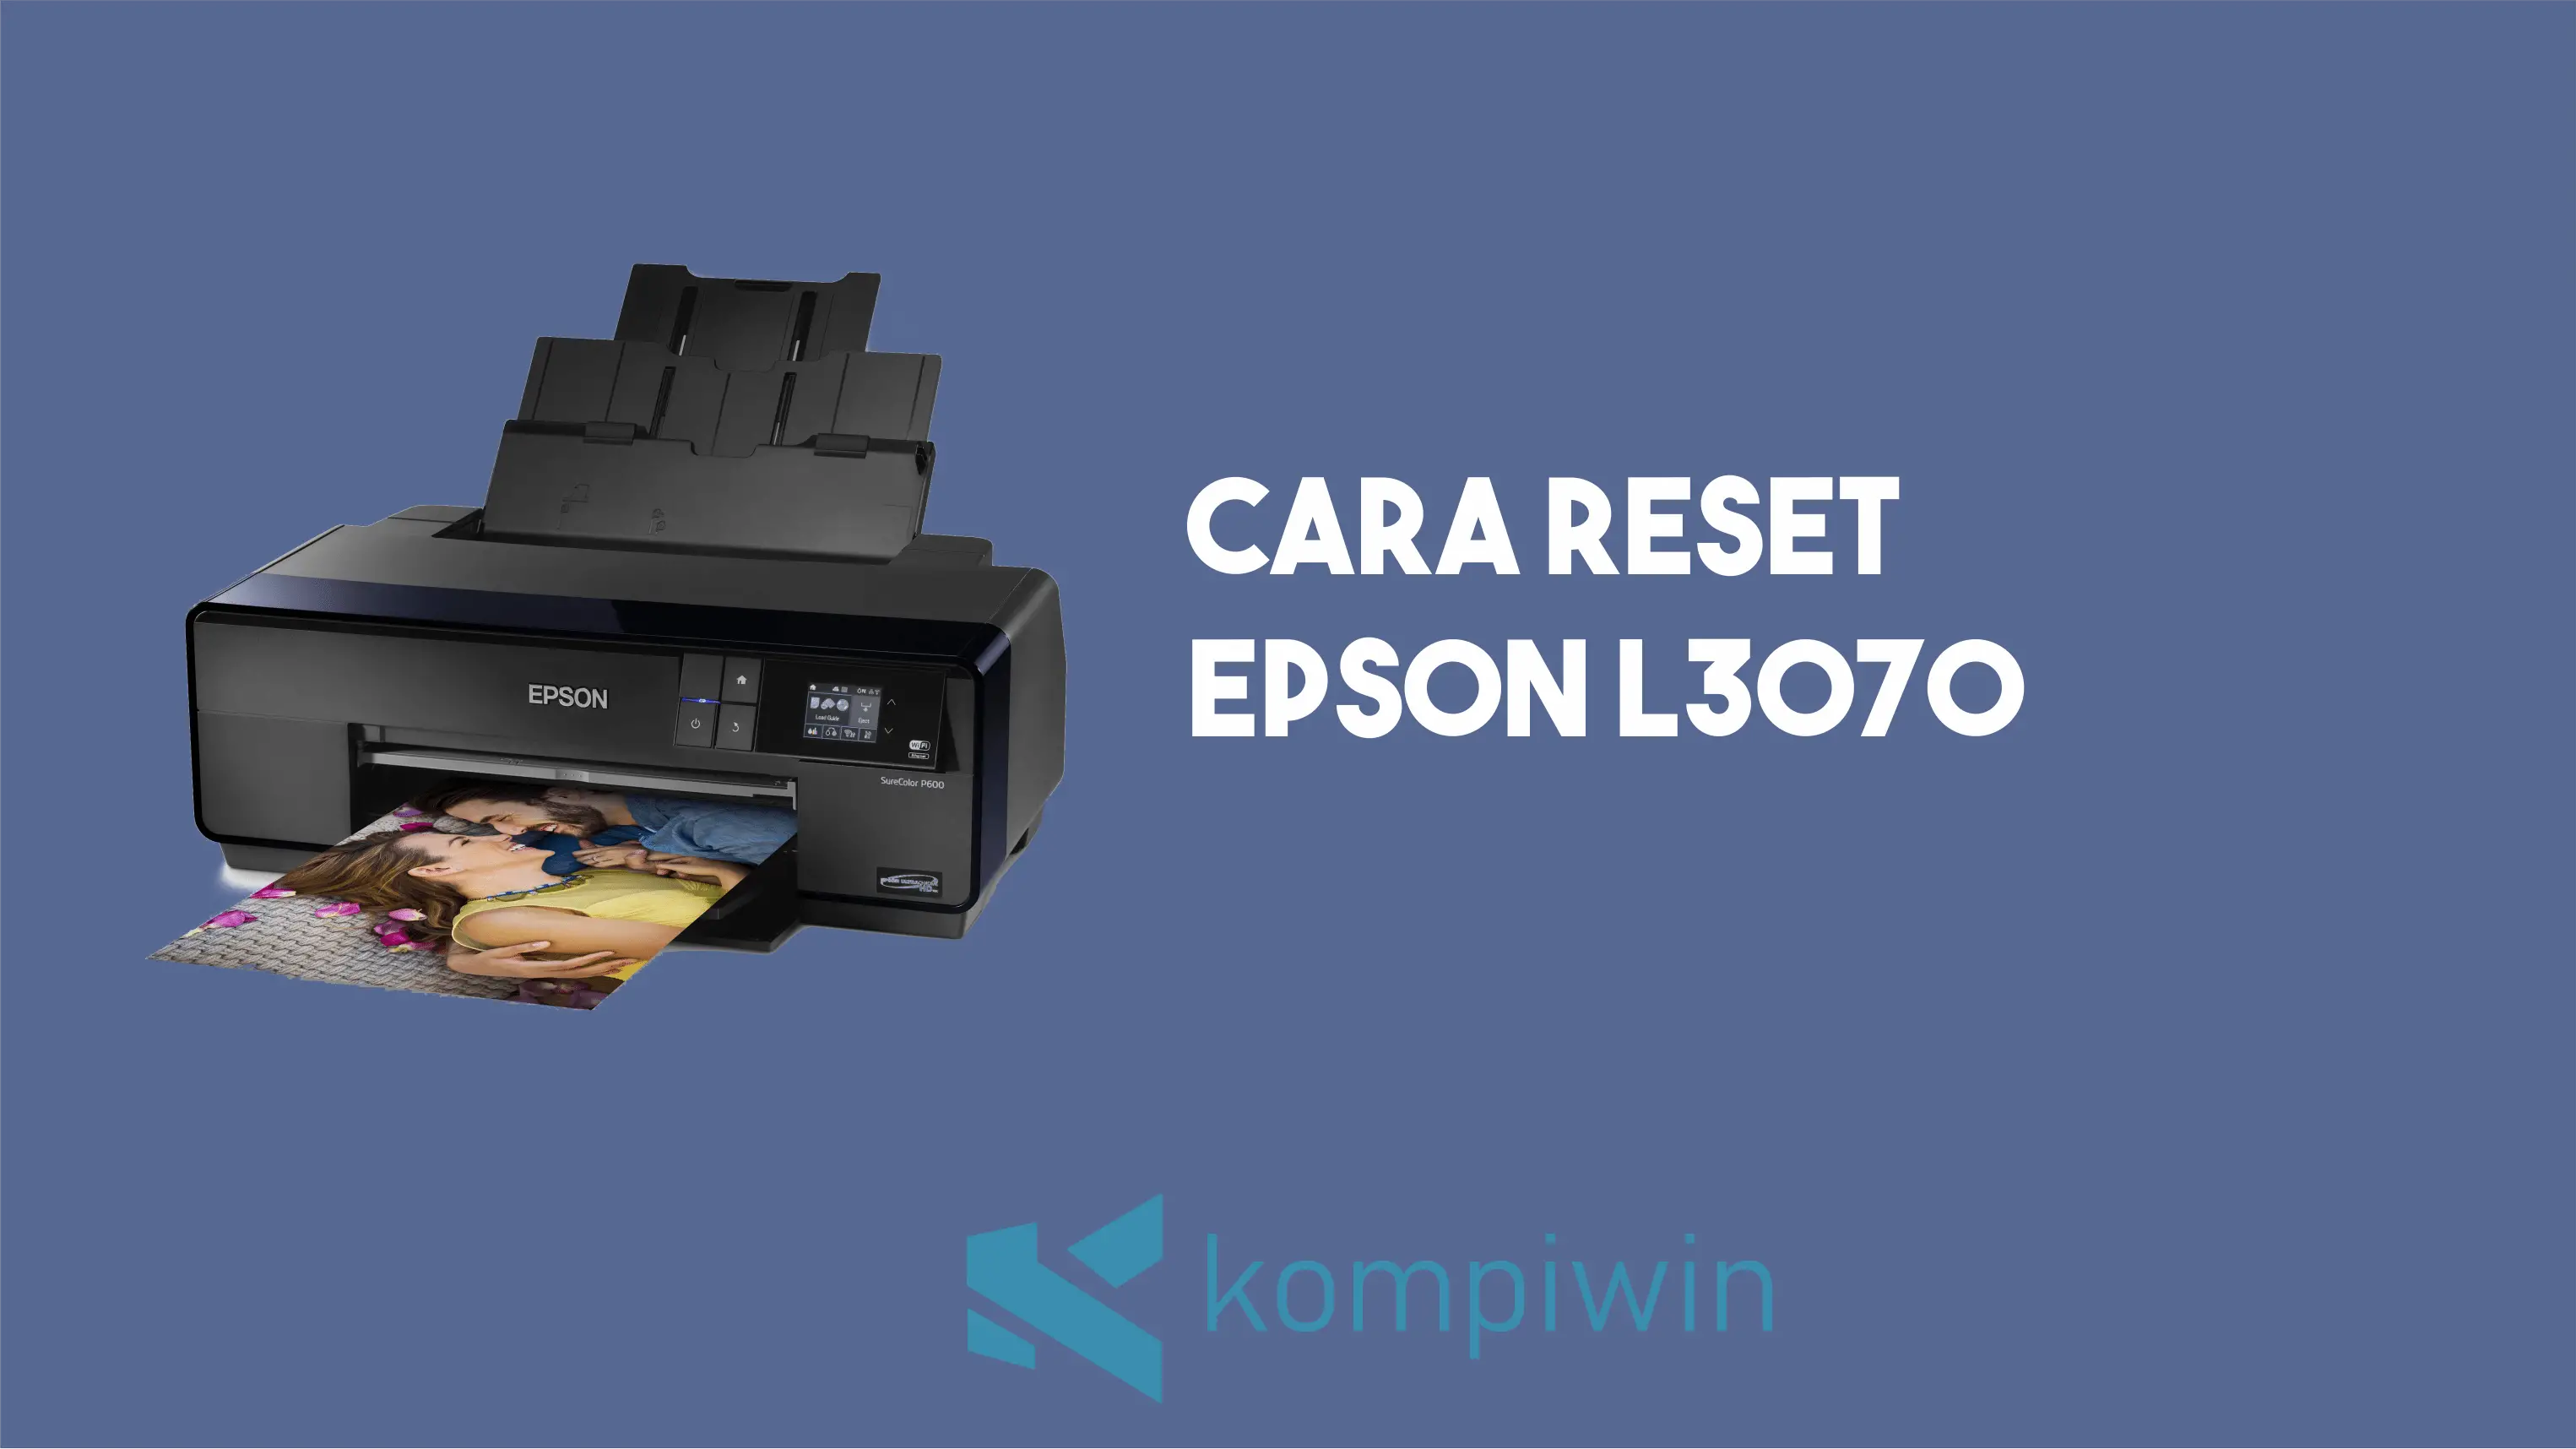 Cara Reset Epson L3070